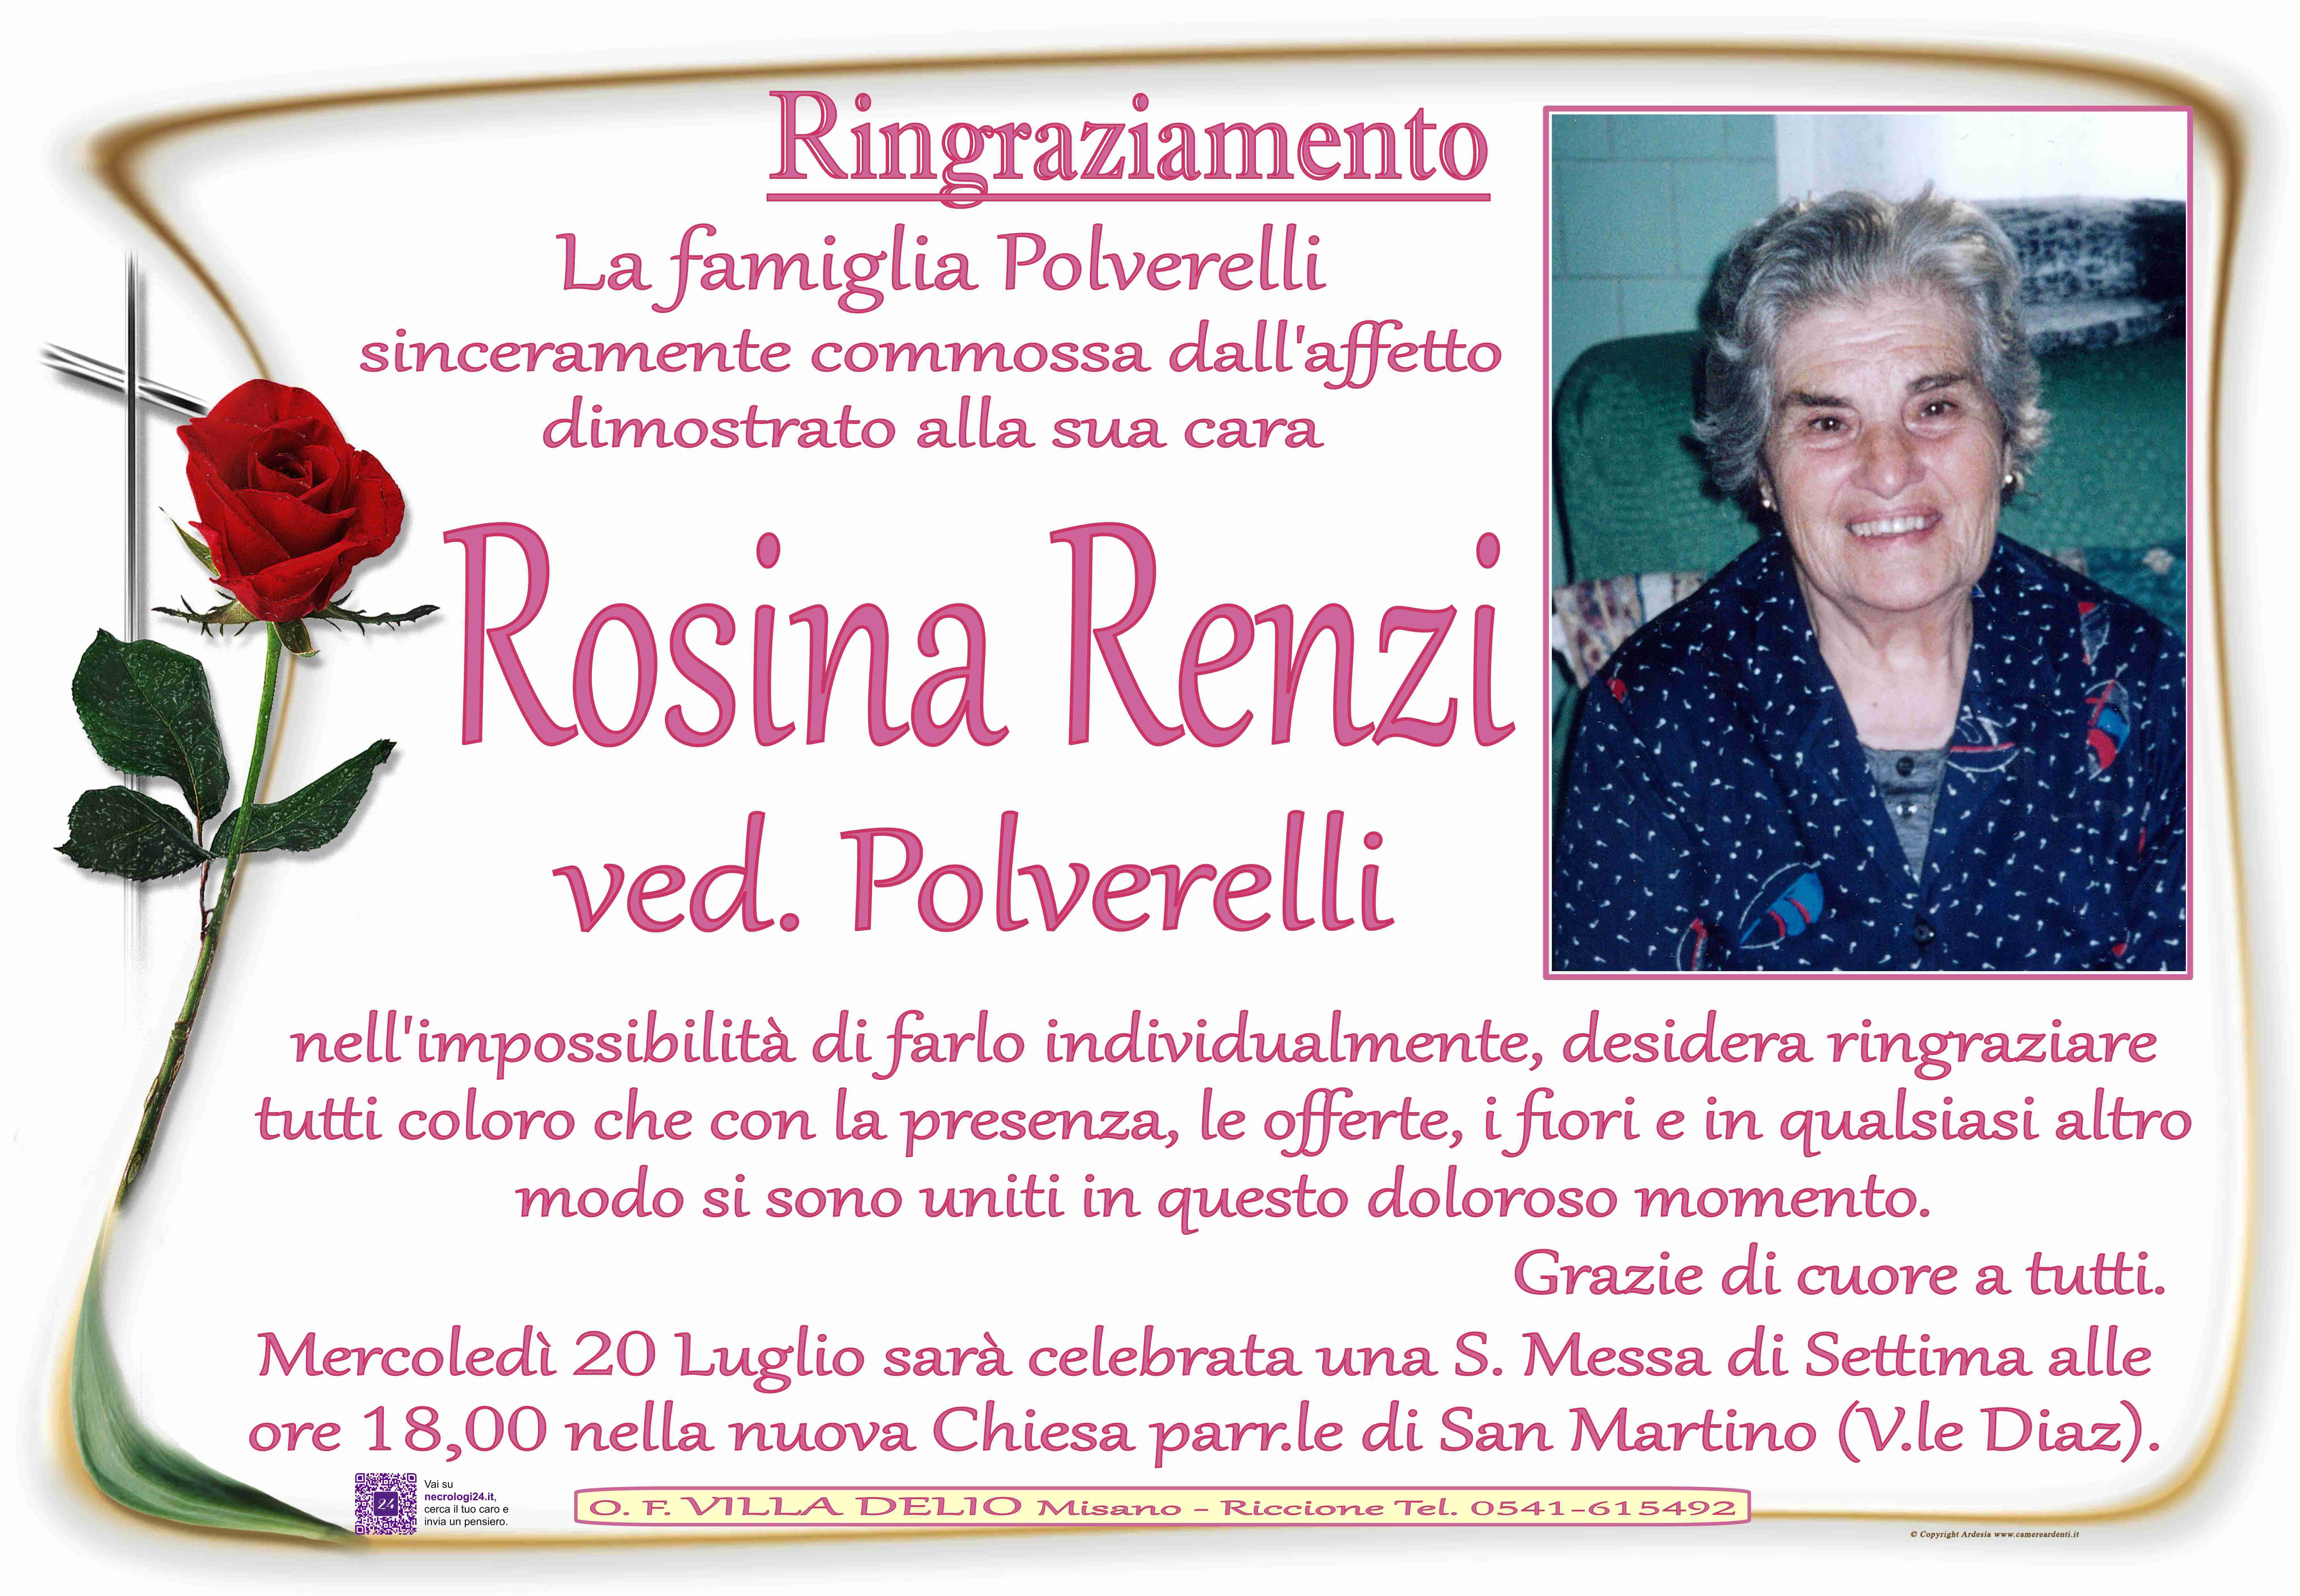 Rosina Renzi